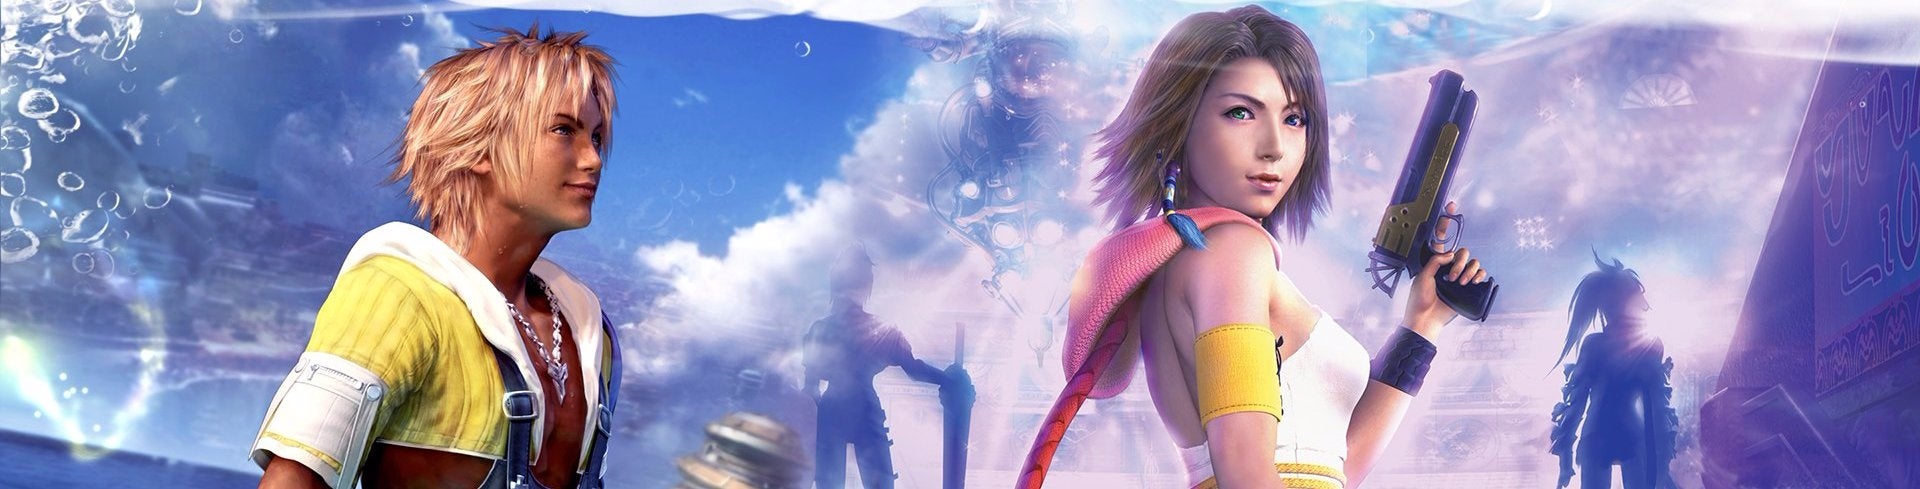 Immagine di Final Fantasy X/X-2 Remaster su PS4 - analisi comparativa